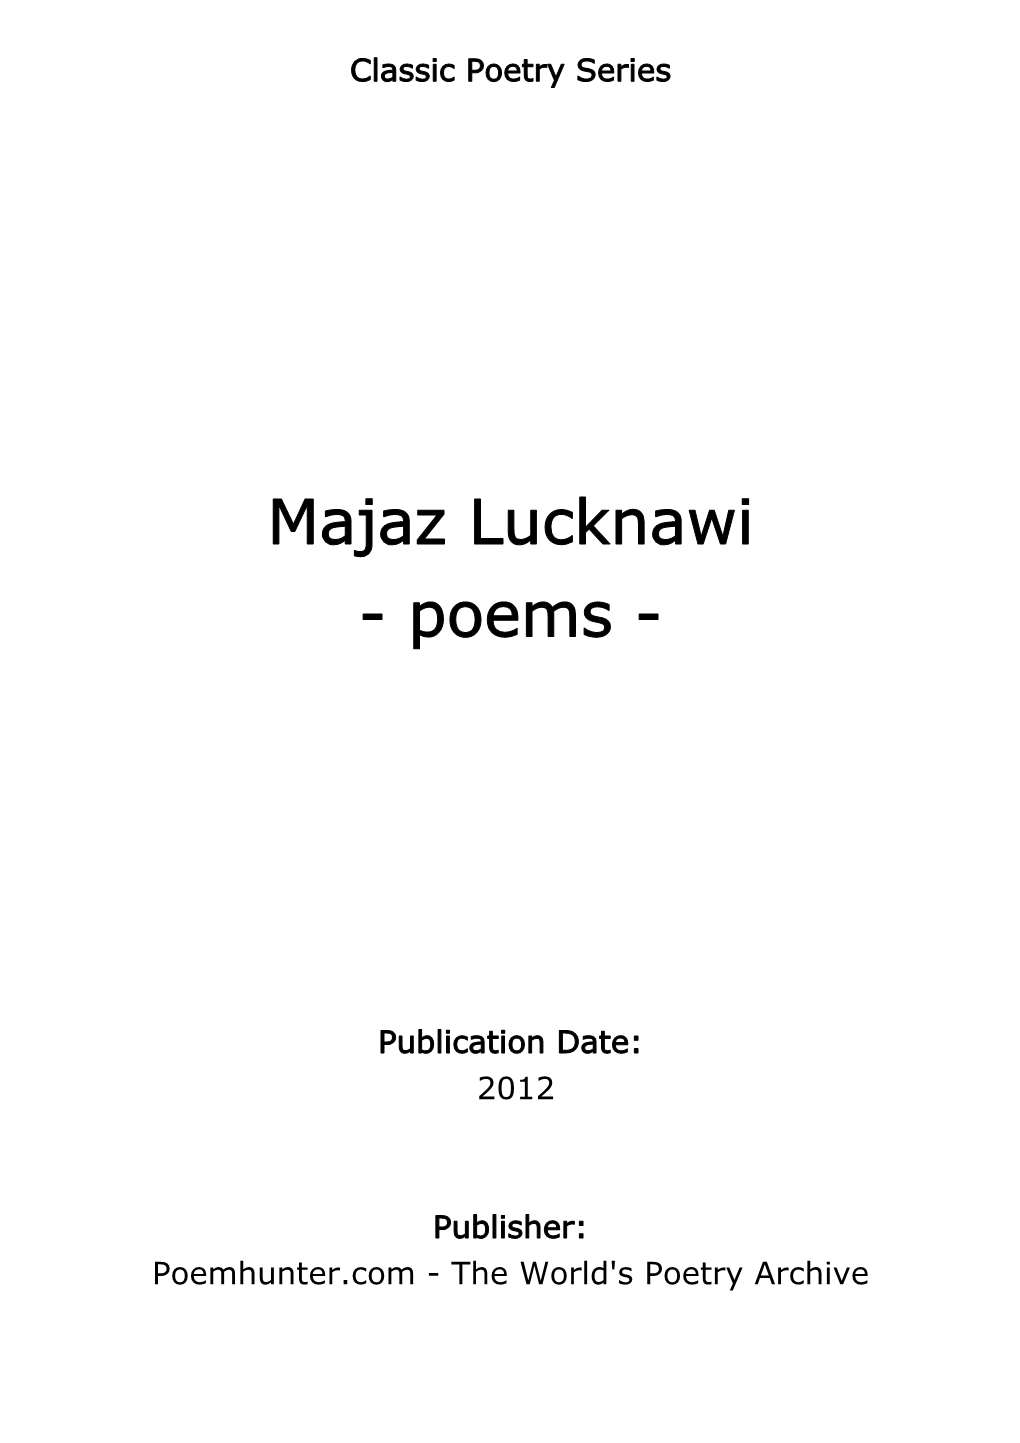 Majaz Lucknawi - Poems